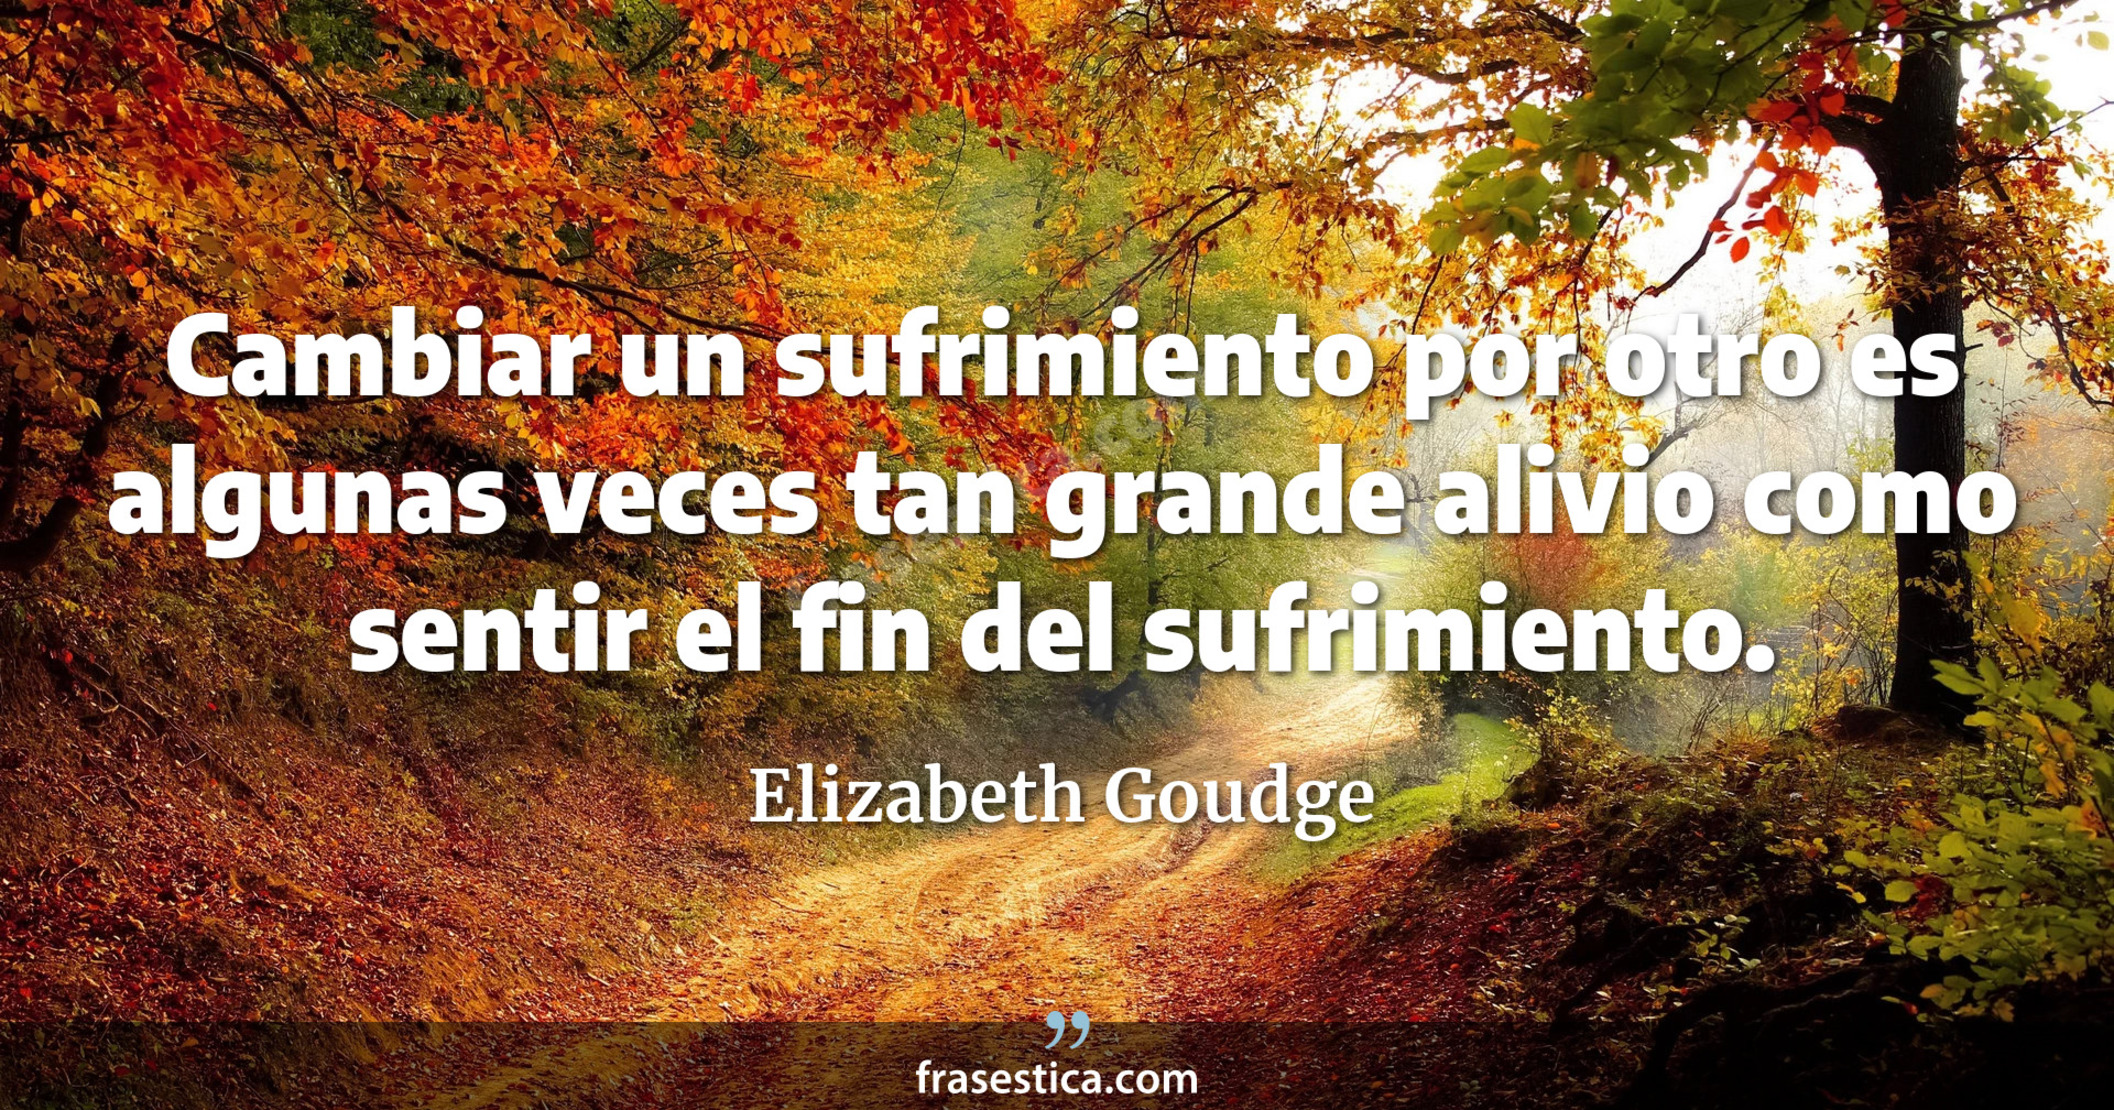 Cambiar un sufrimiento por otro es algunas veces tan grande alivio como sentir el fin del sufrimiento. - Elizabeth Goudge